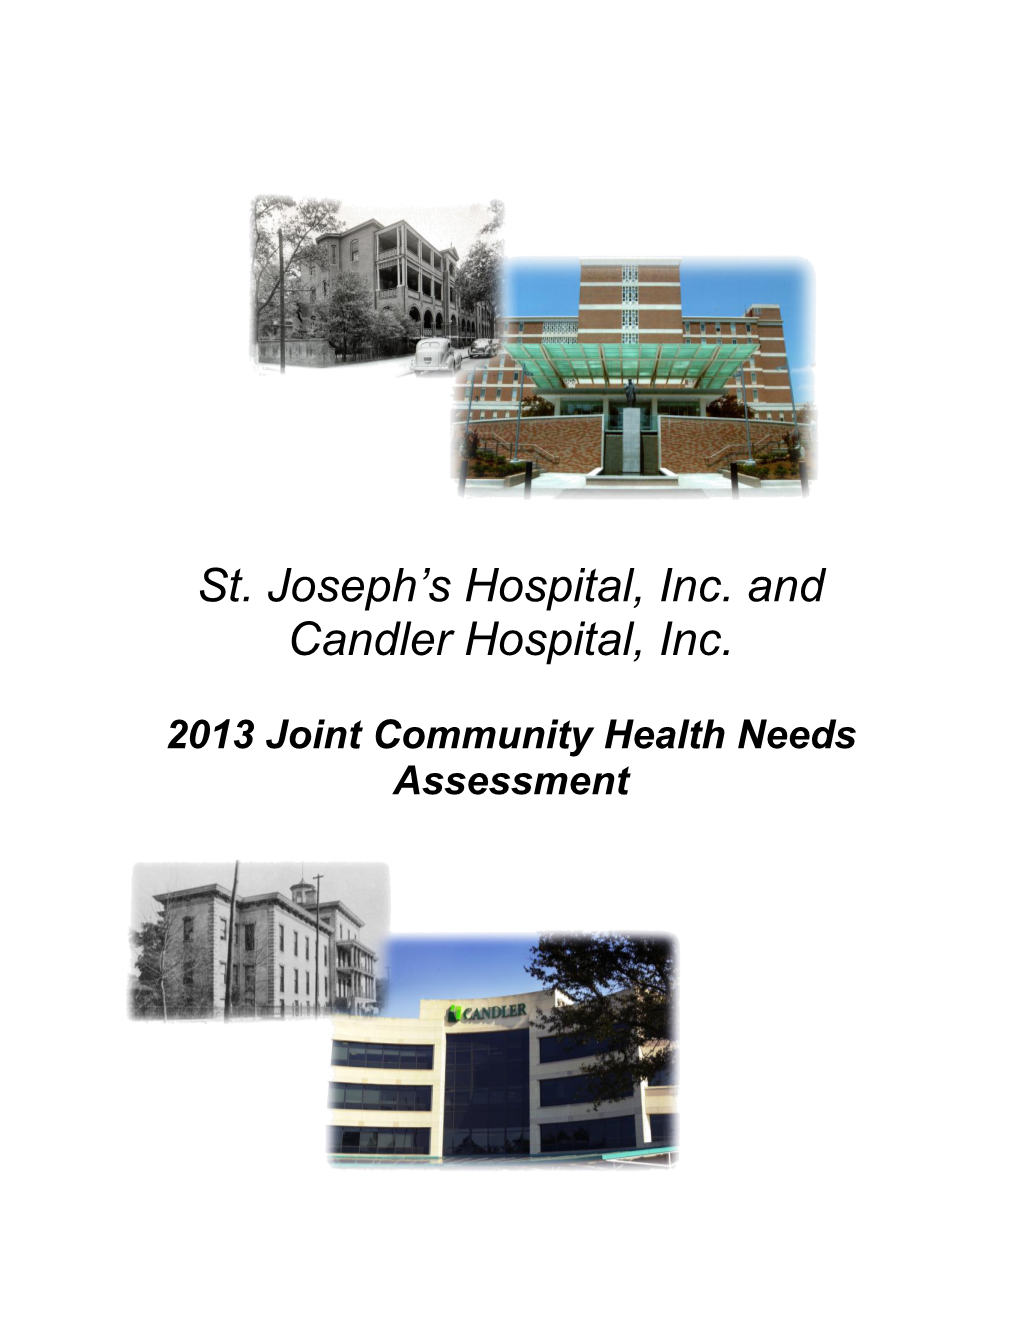 St. Joseph's/Candler 2013 Community Health Needs Assessment